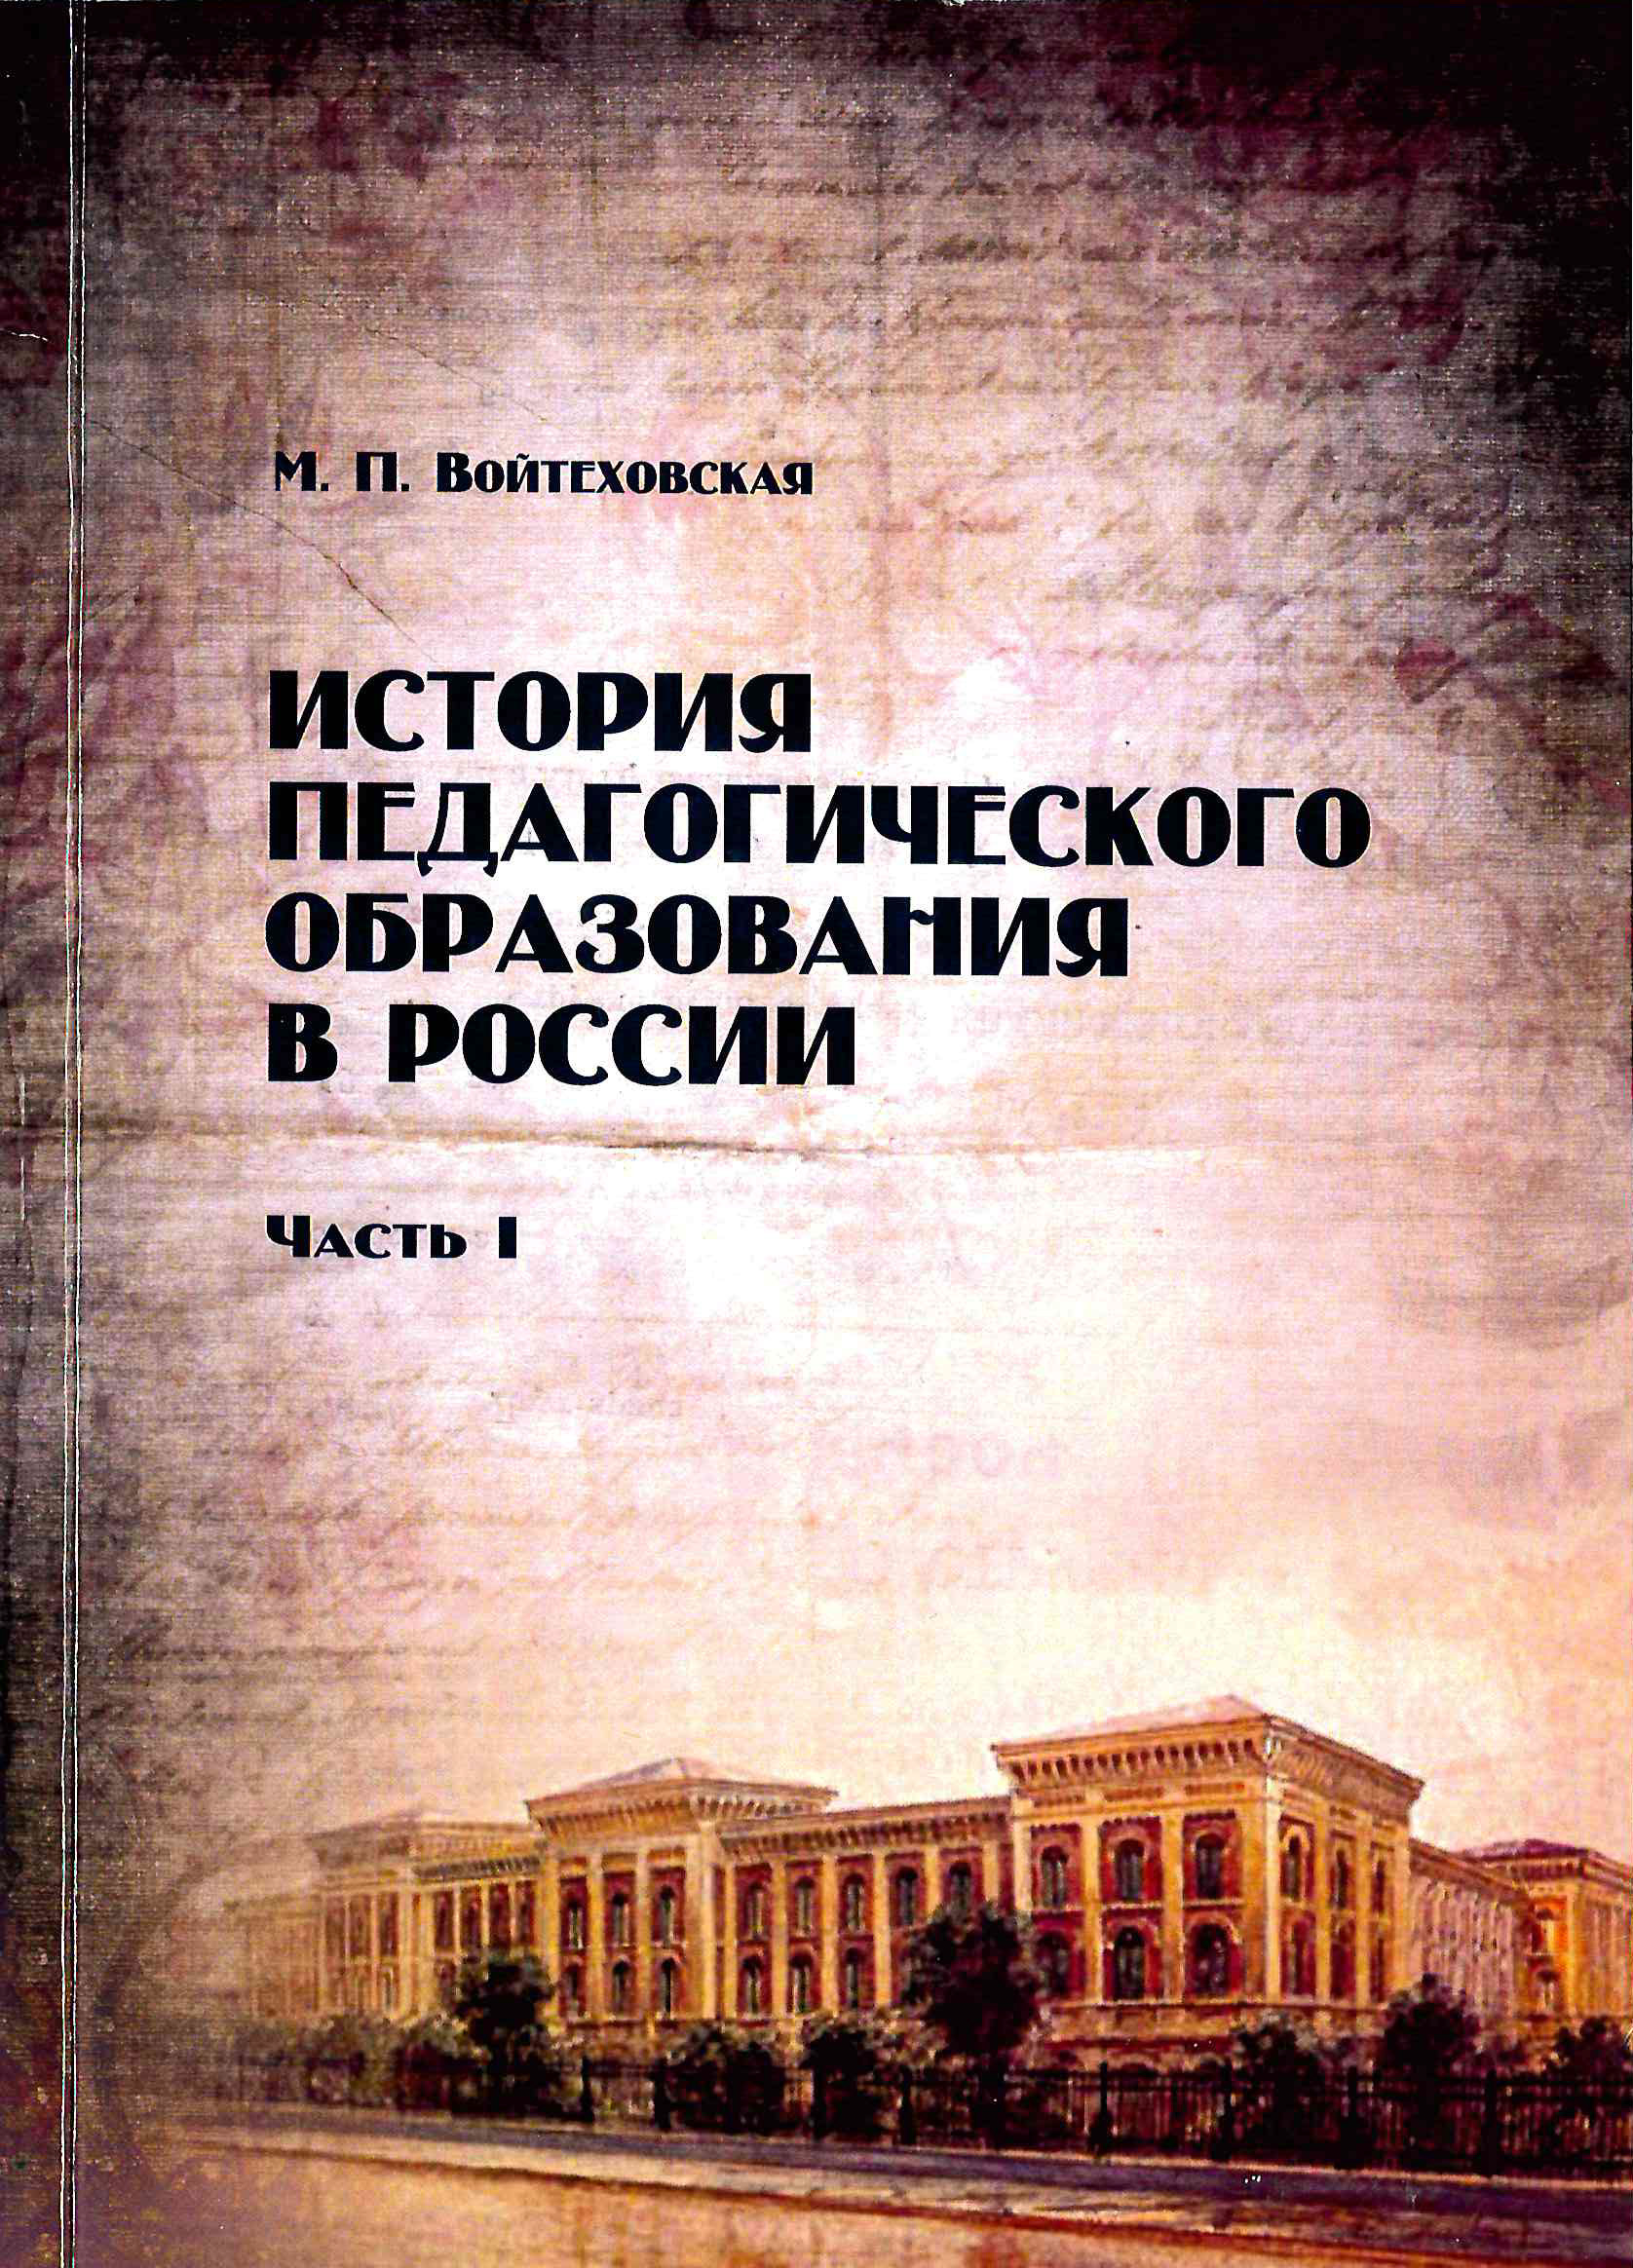 Обложка История педагогического образования в России 1 Часть